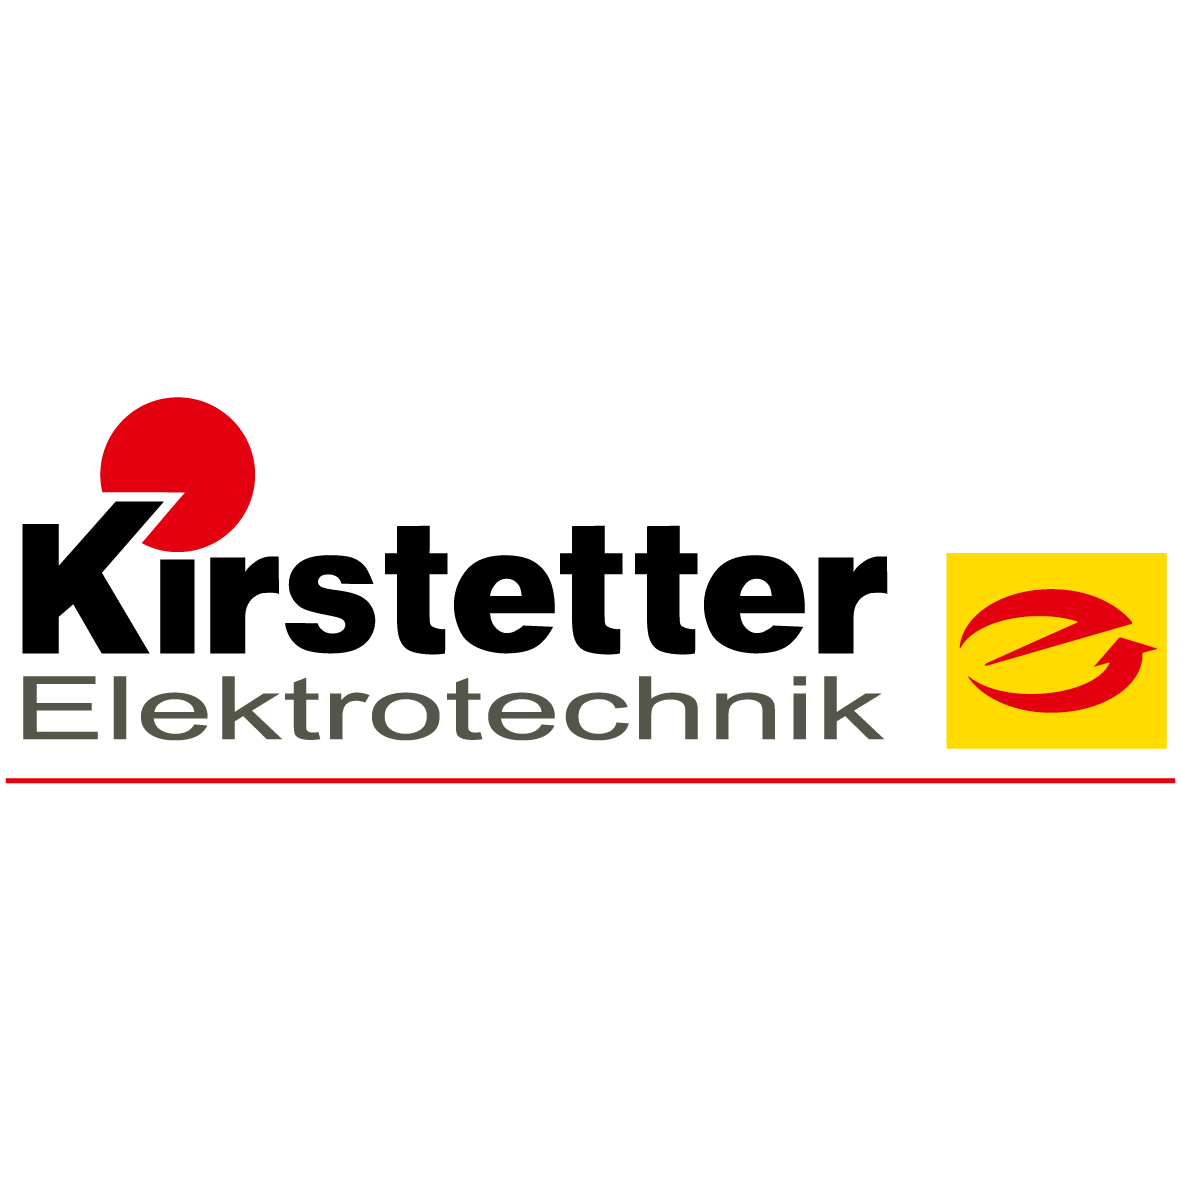 Kirstetter Elektrotechnik in Staufen im Breisgau - Logo